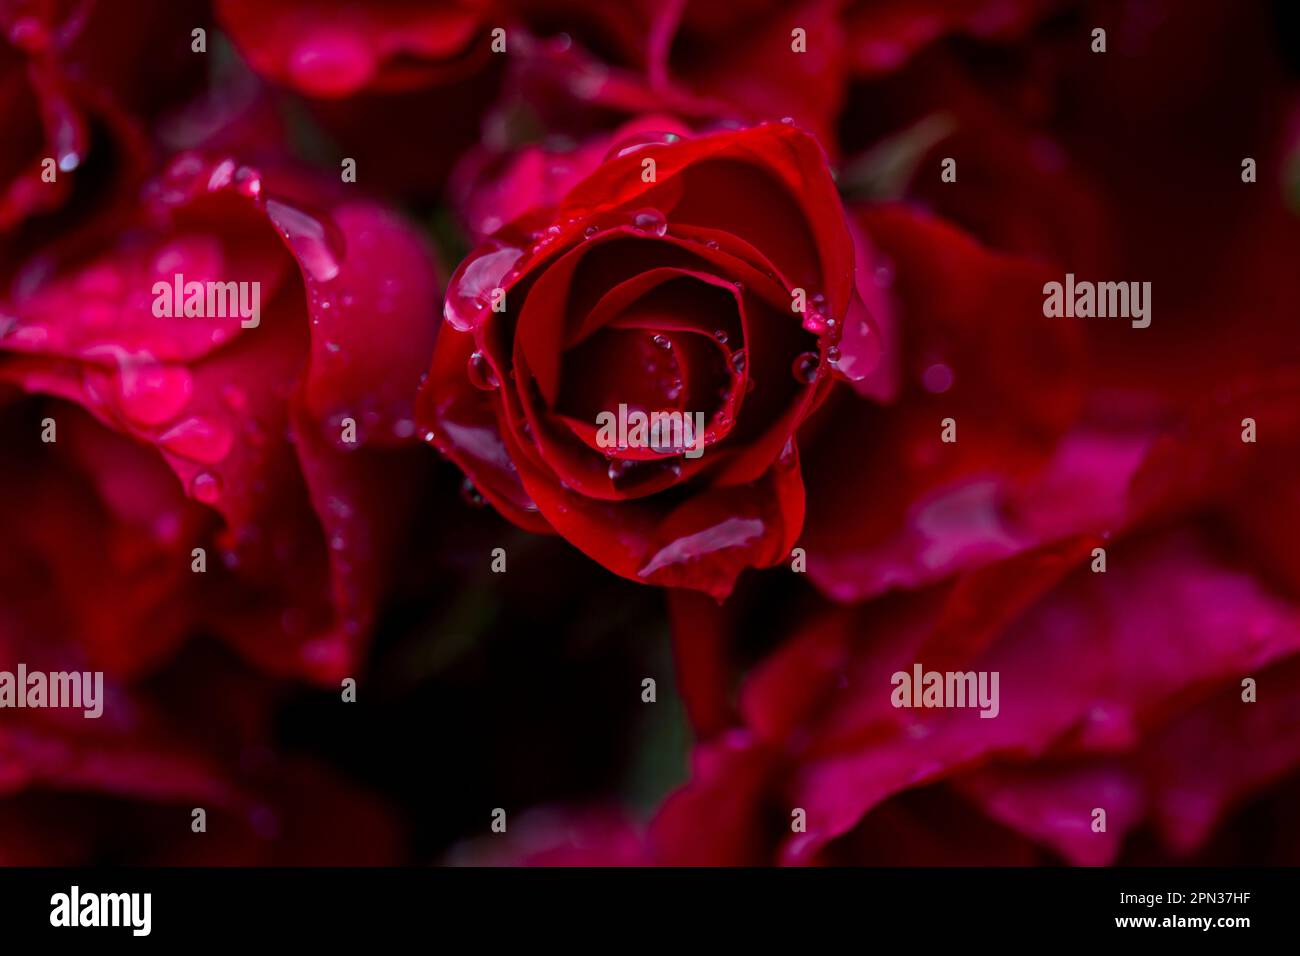 Gocce di pioggia su rose rosse Foto Stock